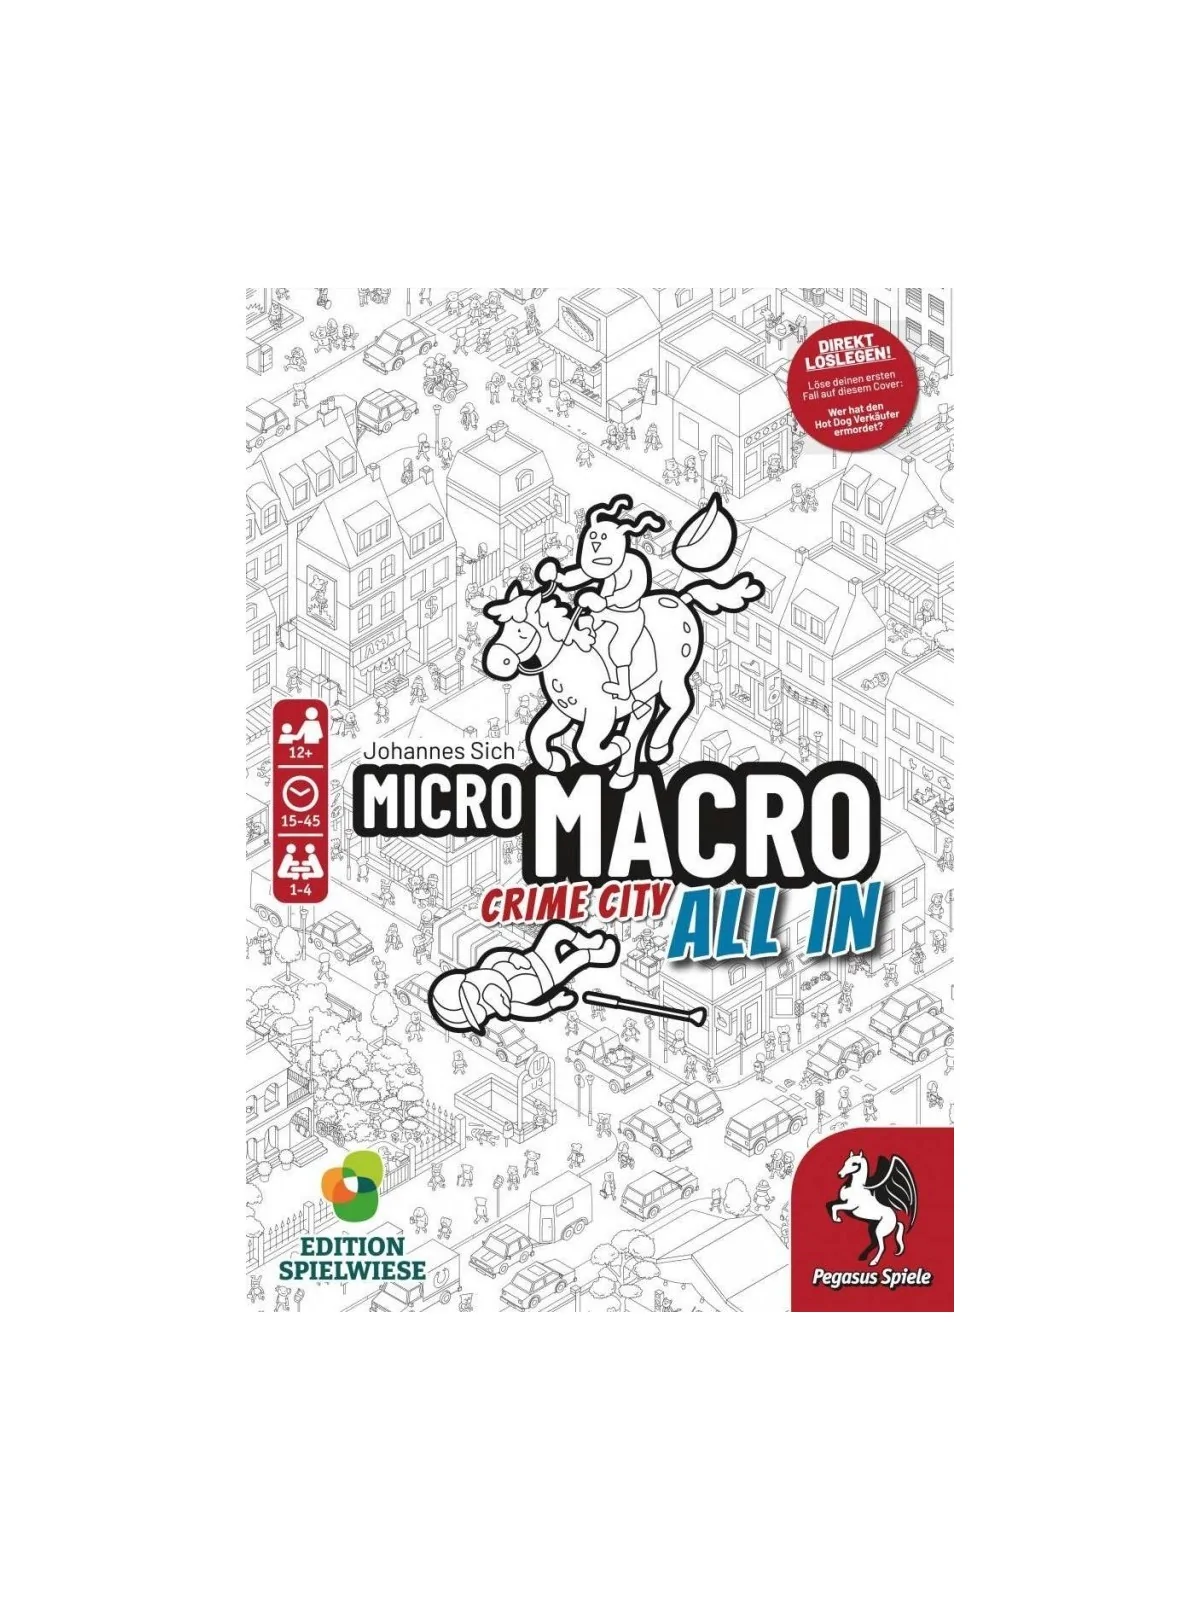 Comprar Micro Macro All In barato al mejor precio 31,46 € de SD GAMES